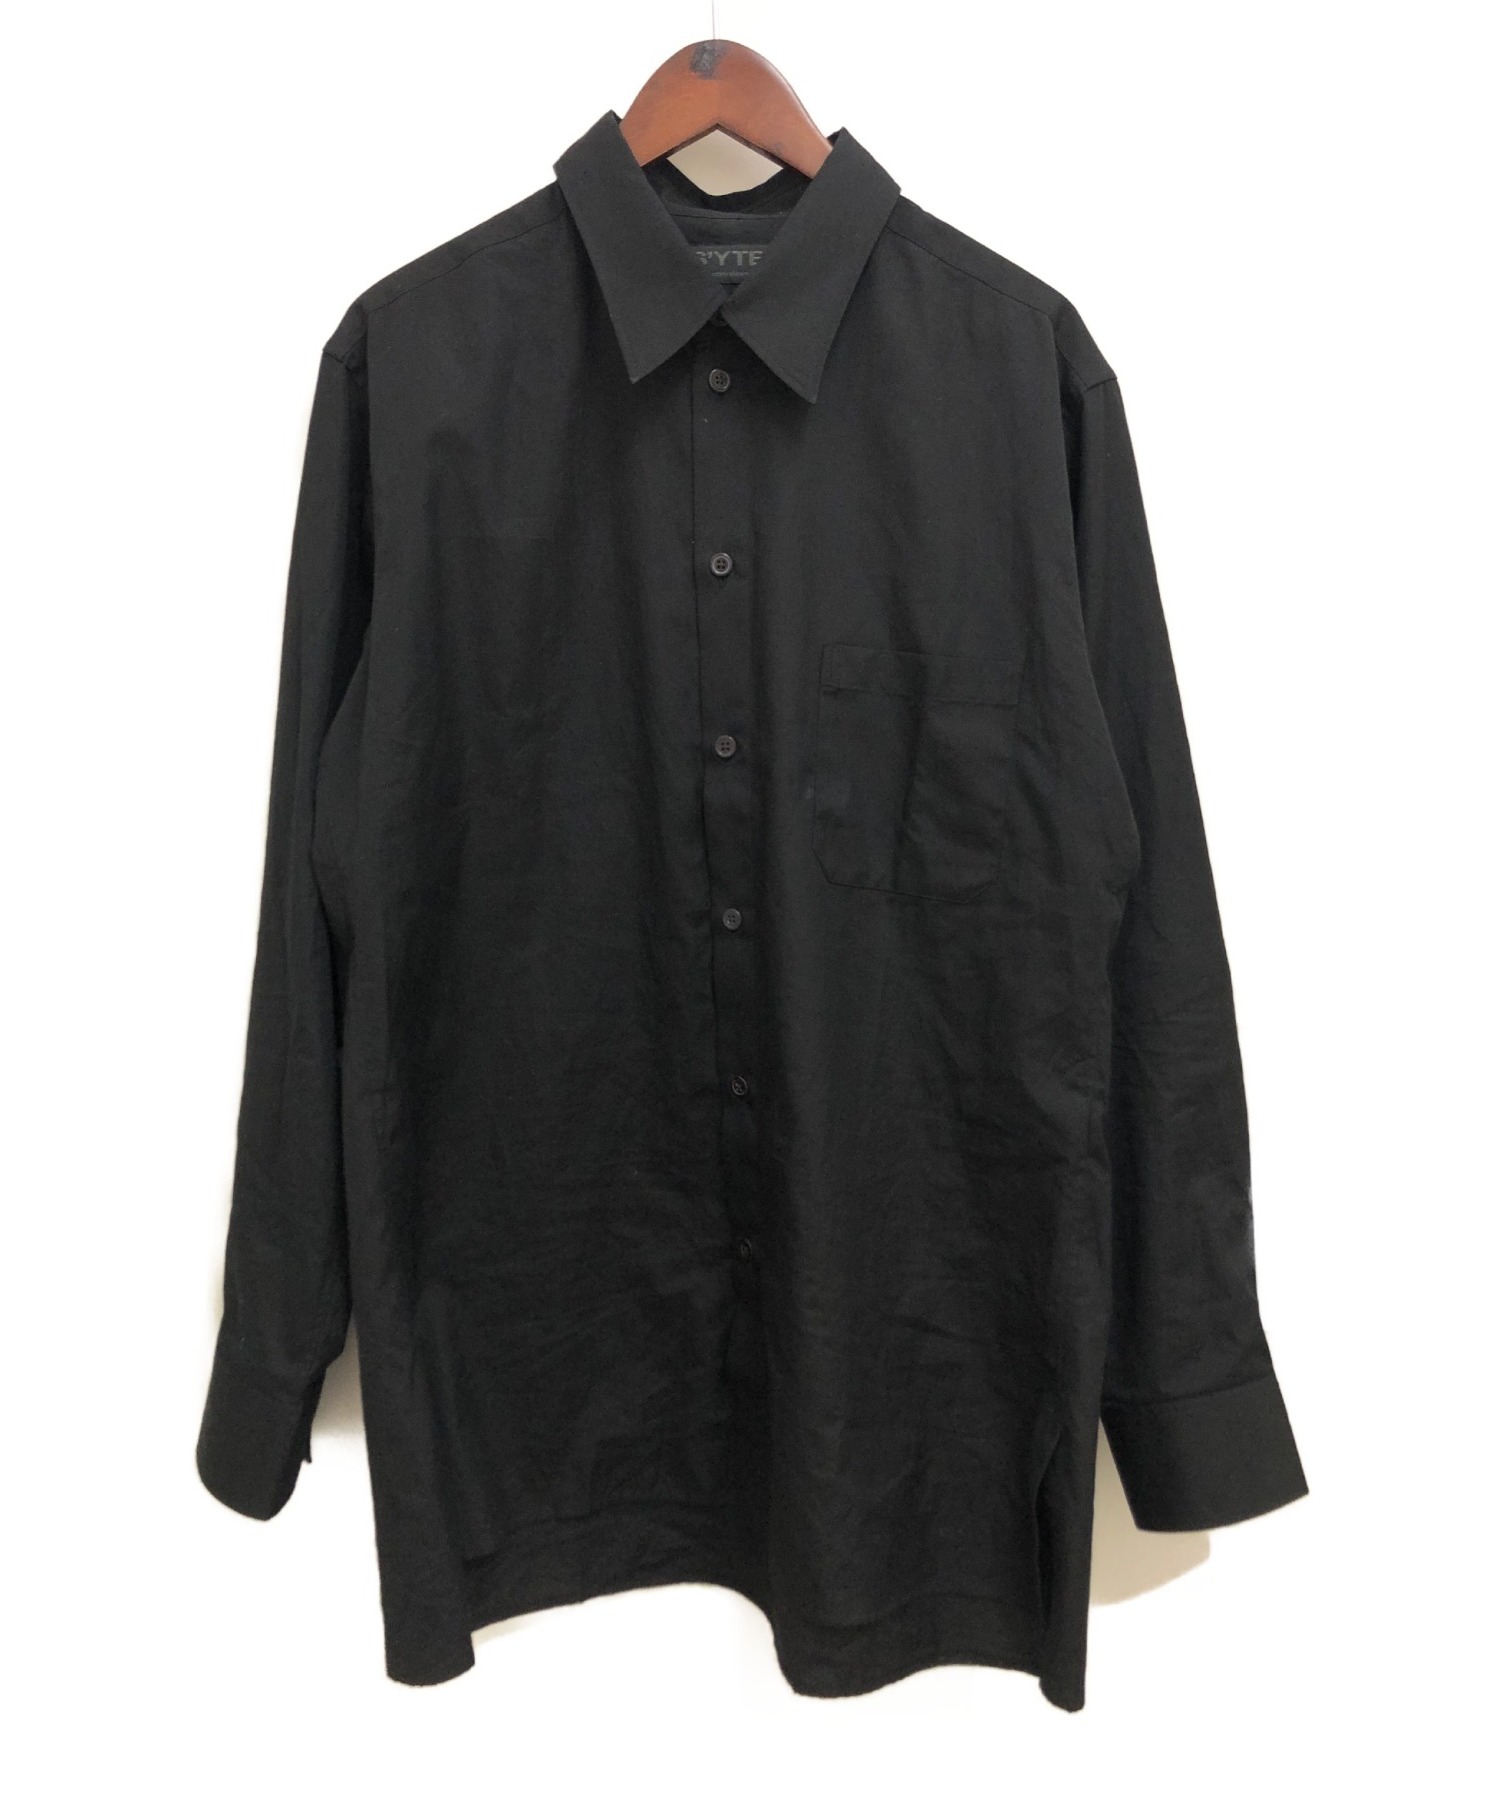 s’yte (サイト) ブロードシャツ ブラック サイズ:3